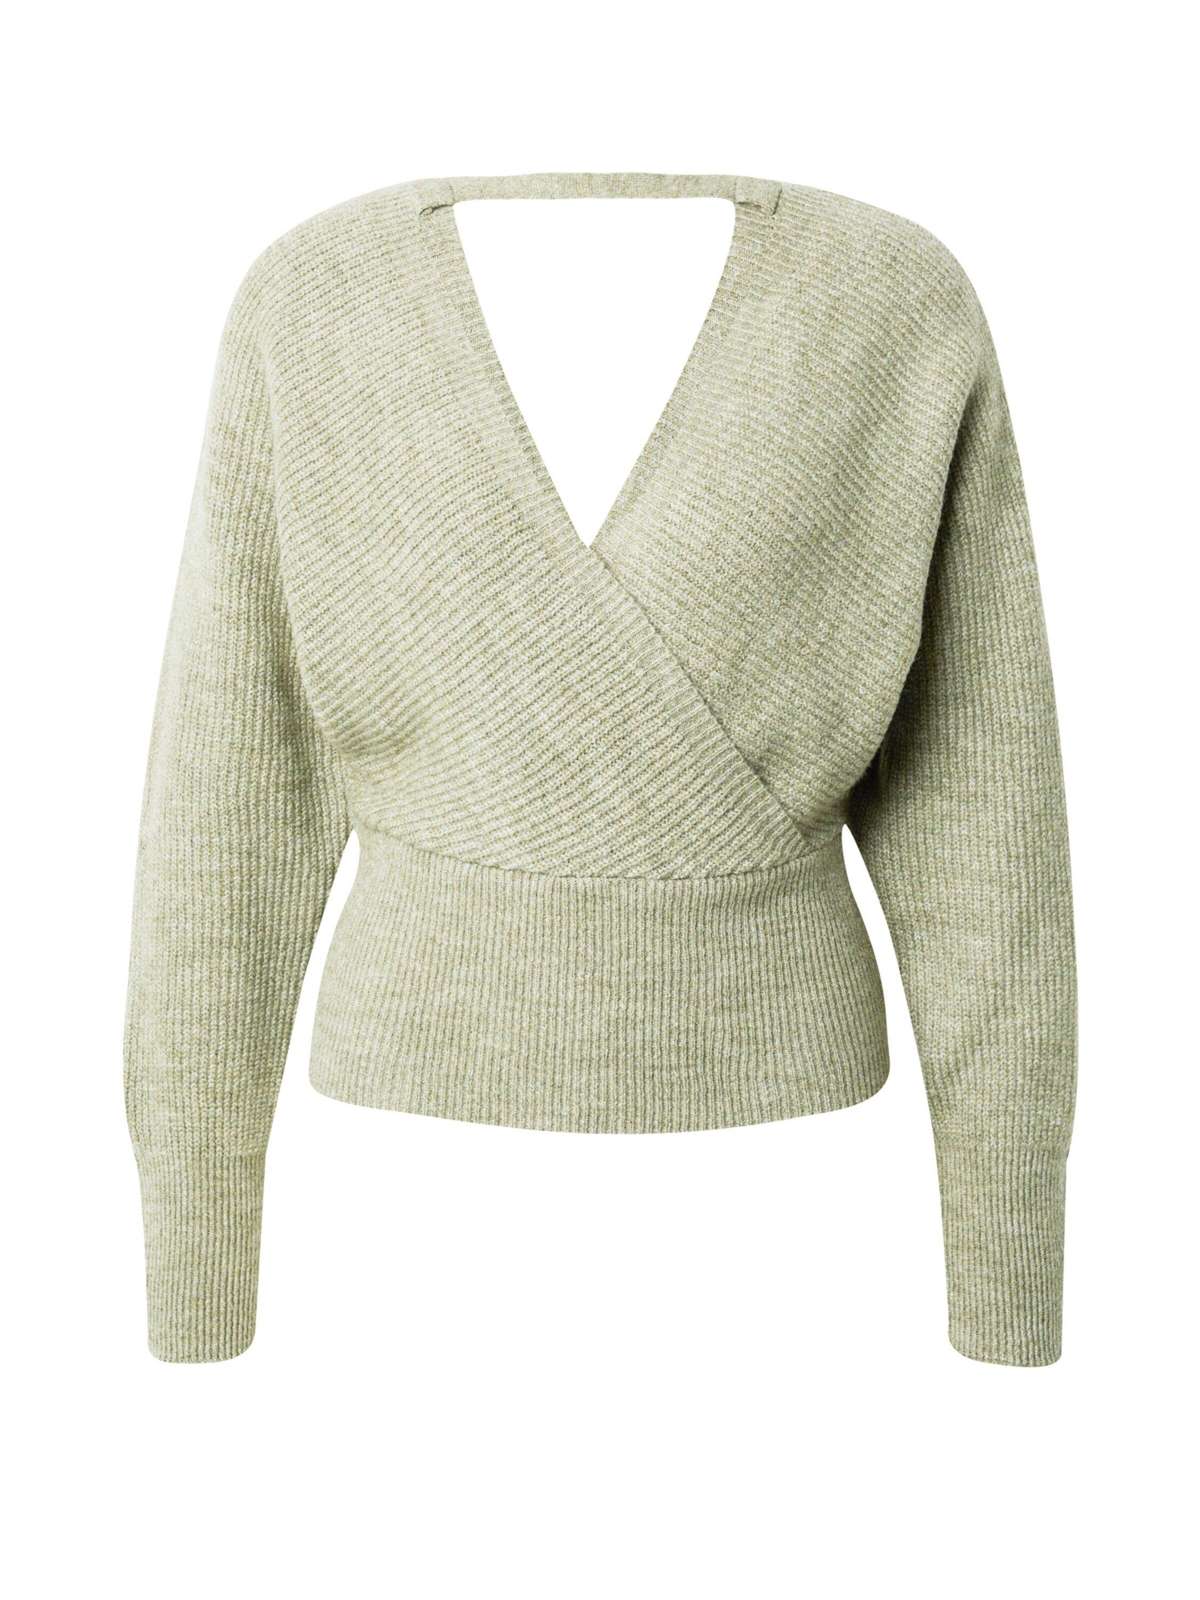 Вязаный свитер Джоалин (1 шт.) с запахом